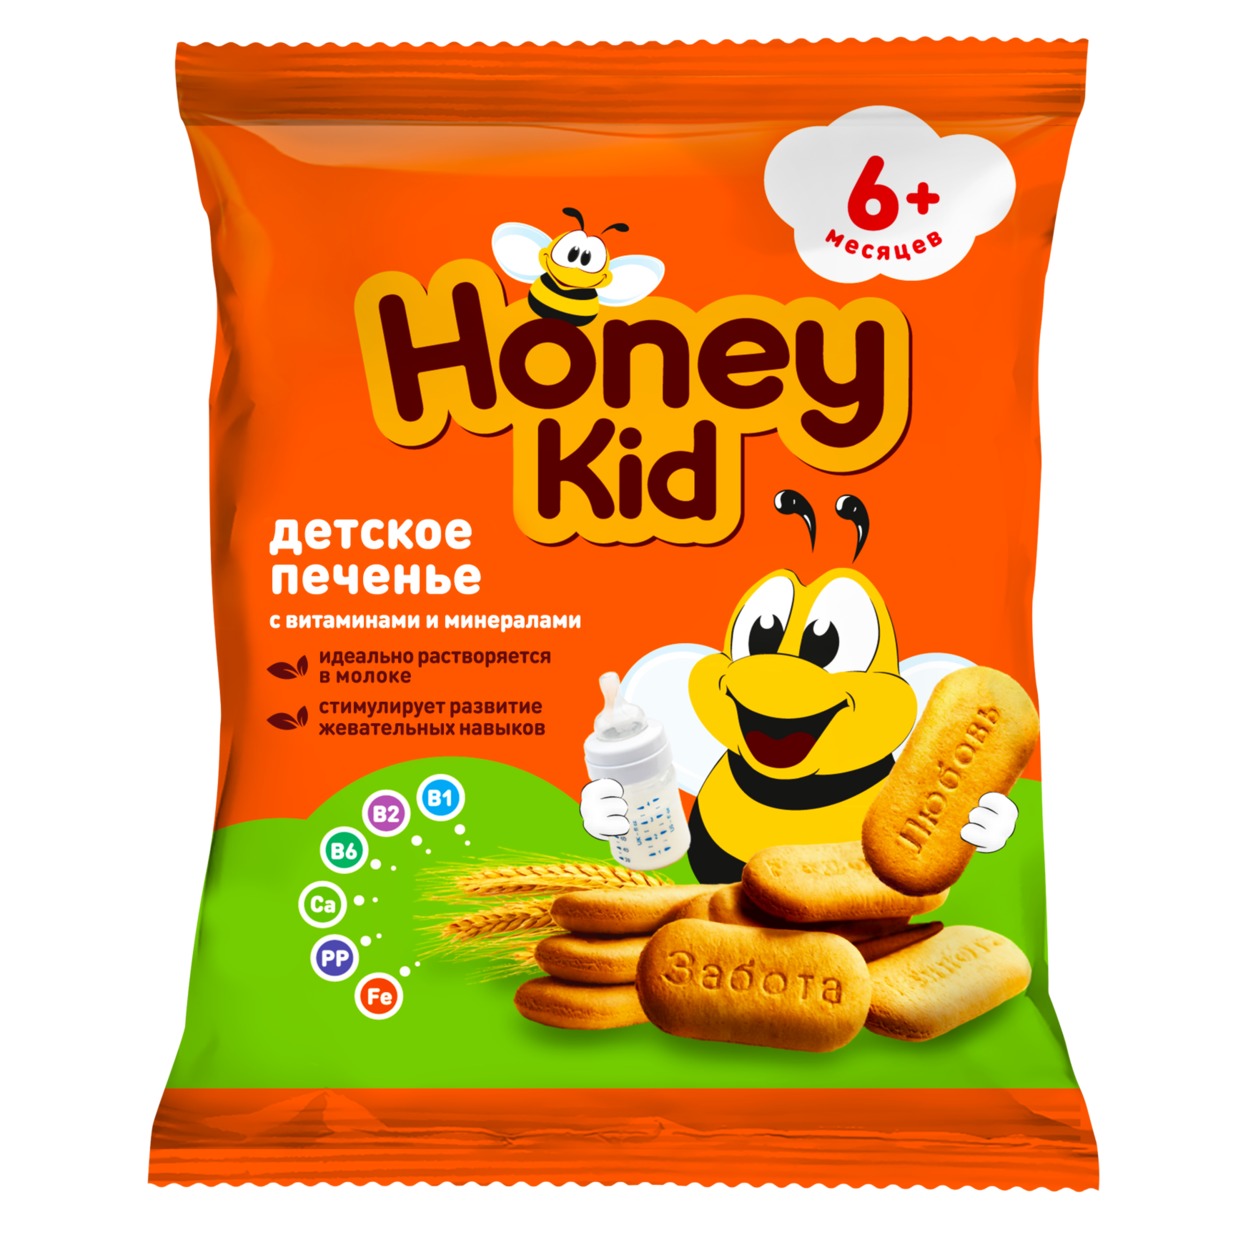 Honey kid Печенье детское растворимое с витаминами и минералами с 5 мес 60 г по акции в Пятерочке